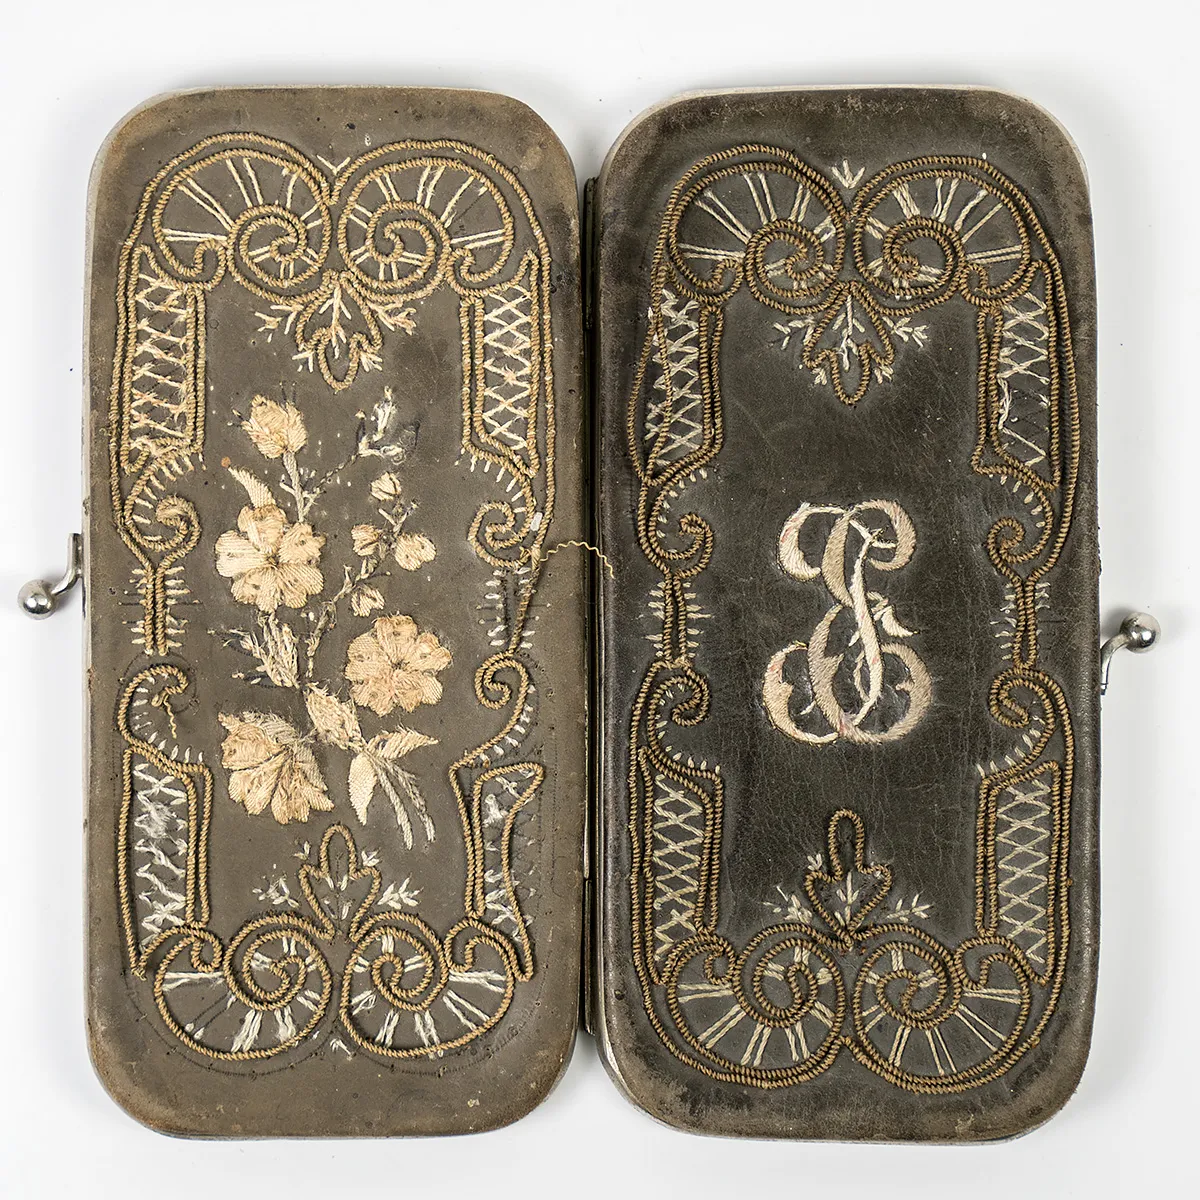 Antique 1880s Victorian Era Cigar Case, Silk & Metallic Embroidery, Moire Silk